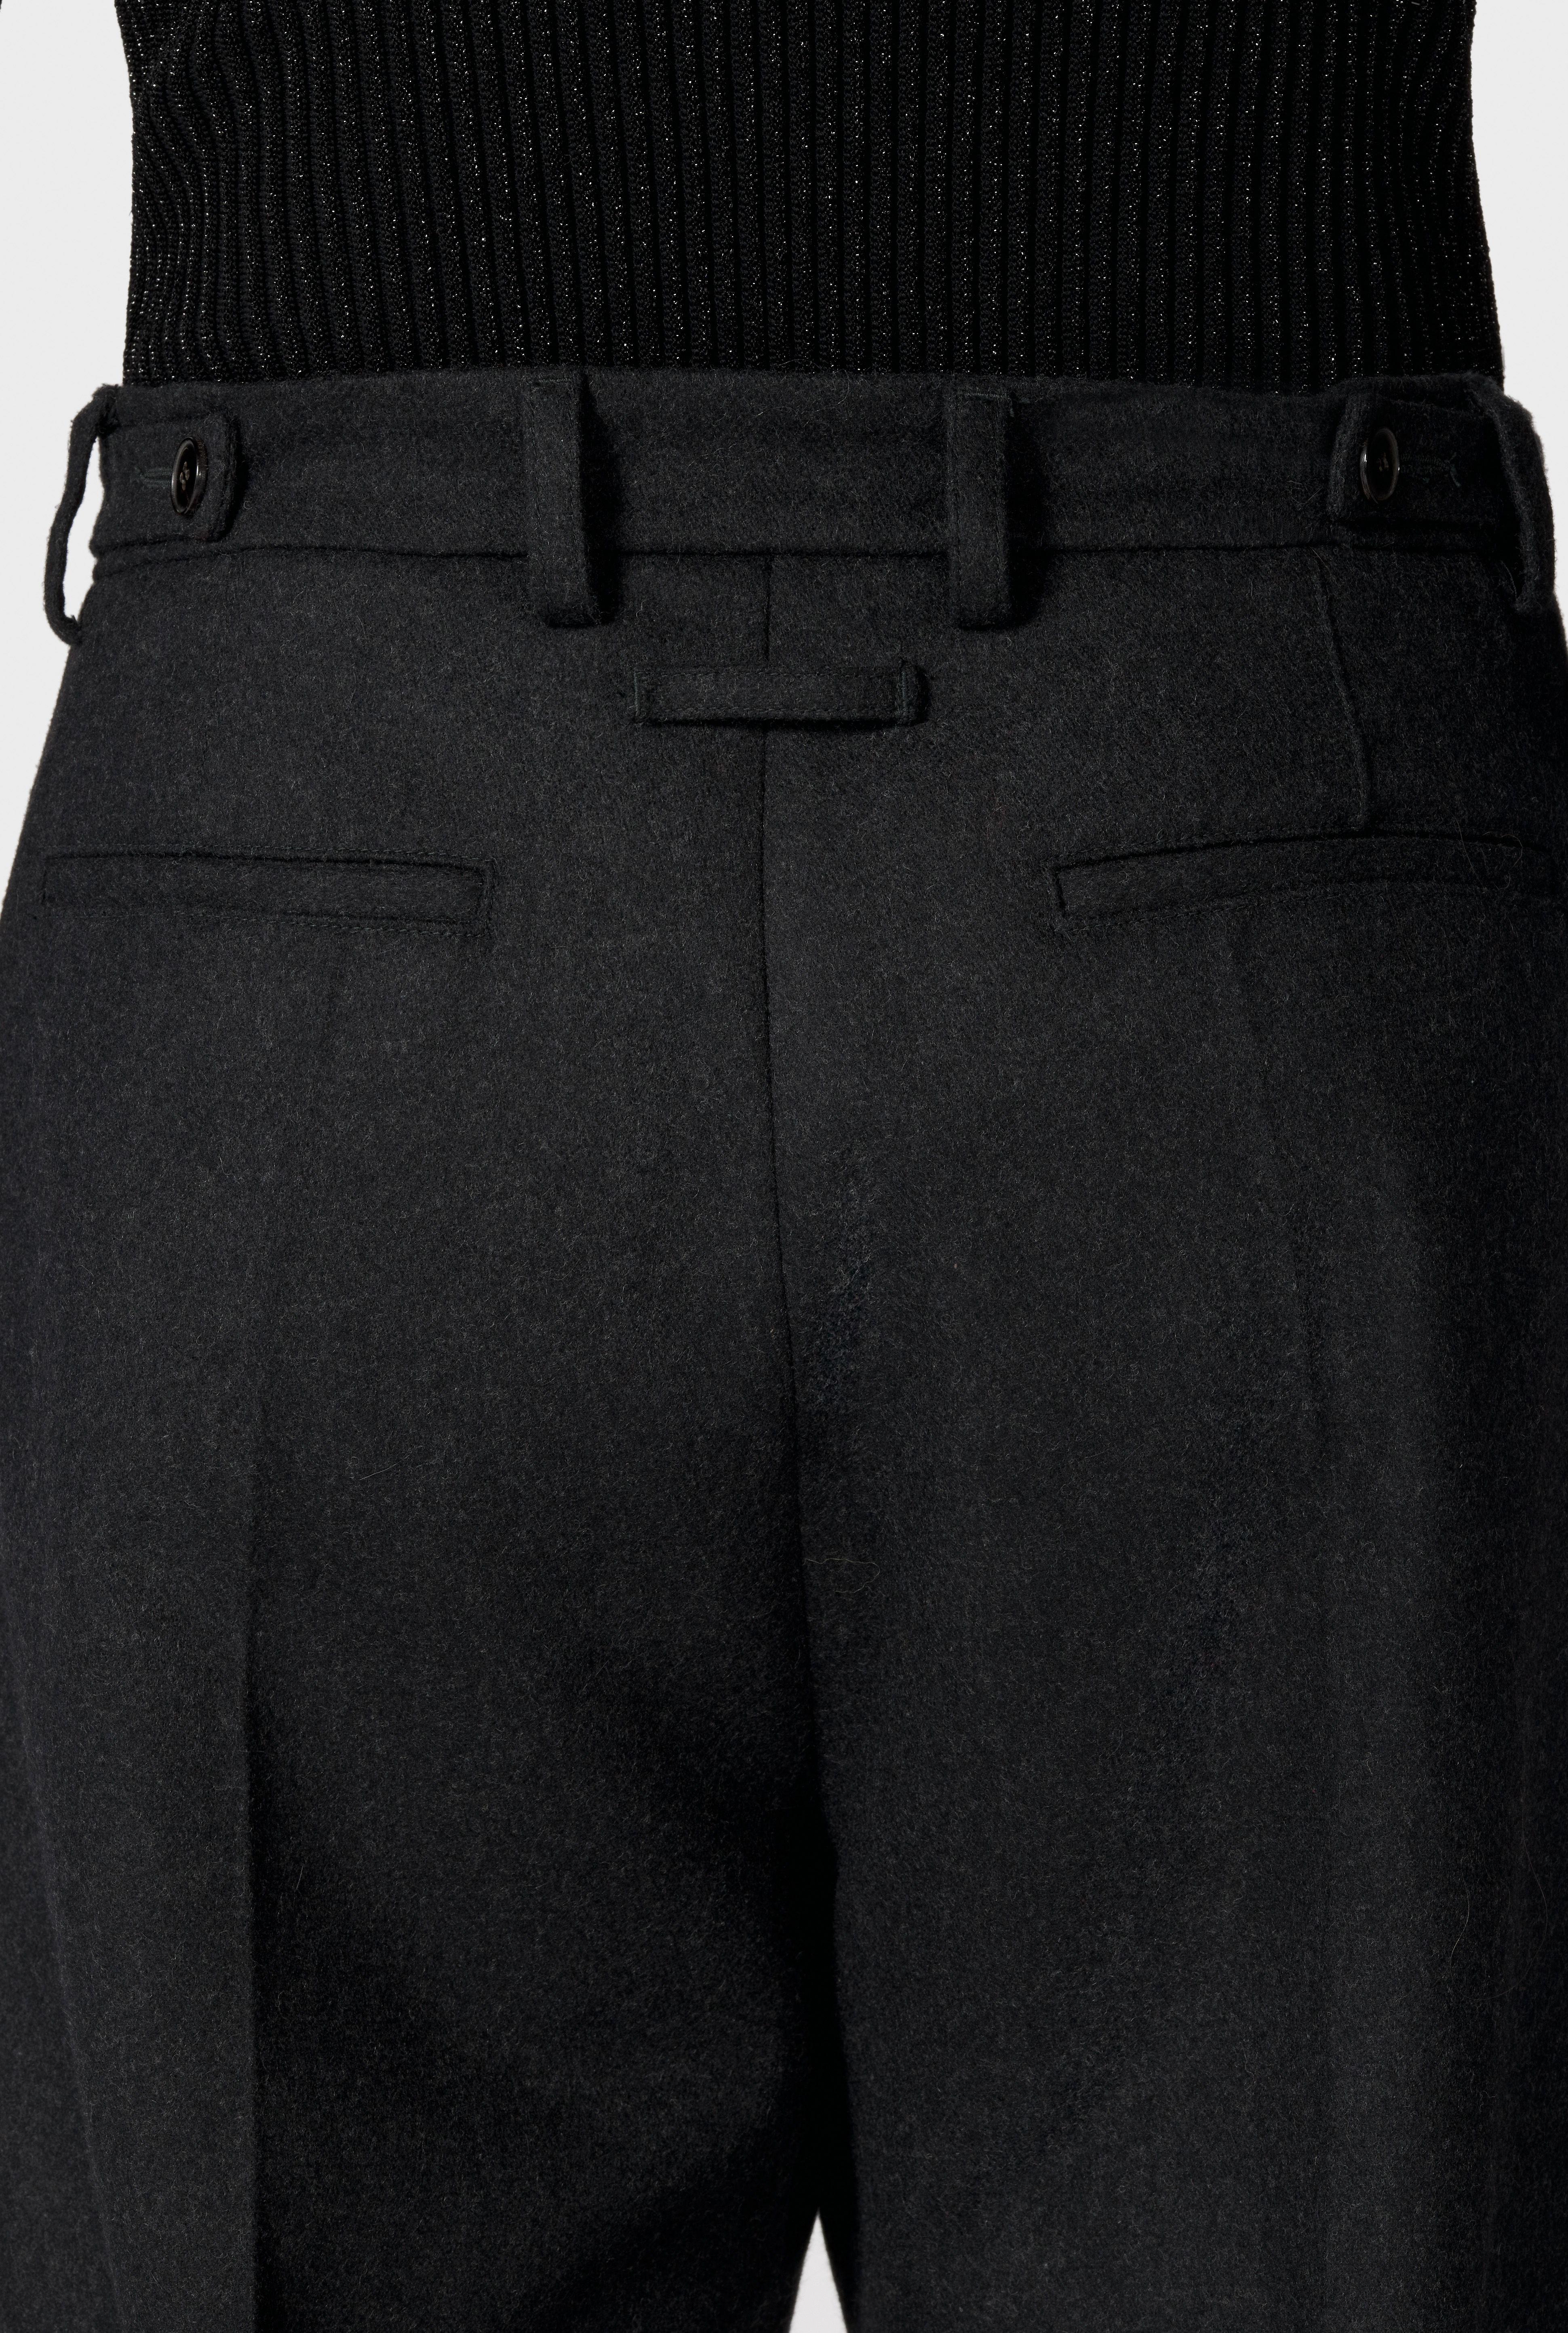 Jean Paul Gaultier - Trousers | Jean Paul Gaultier